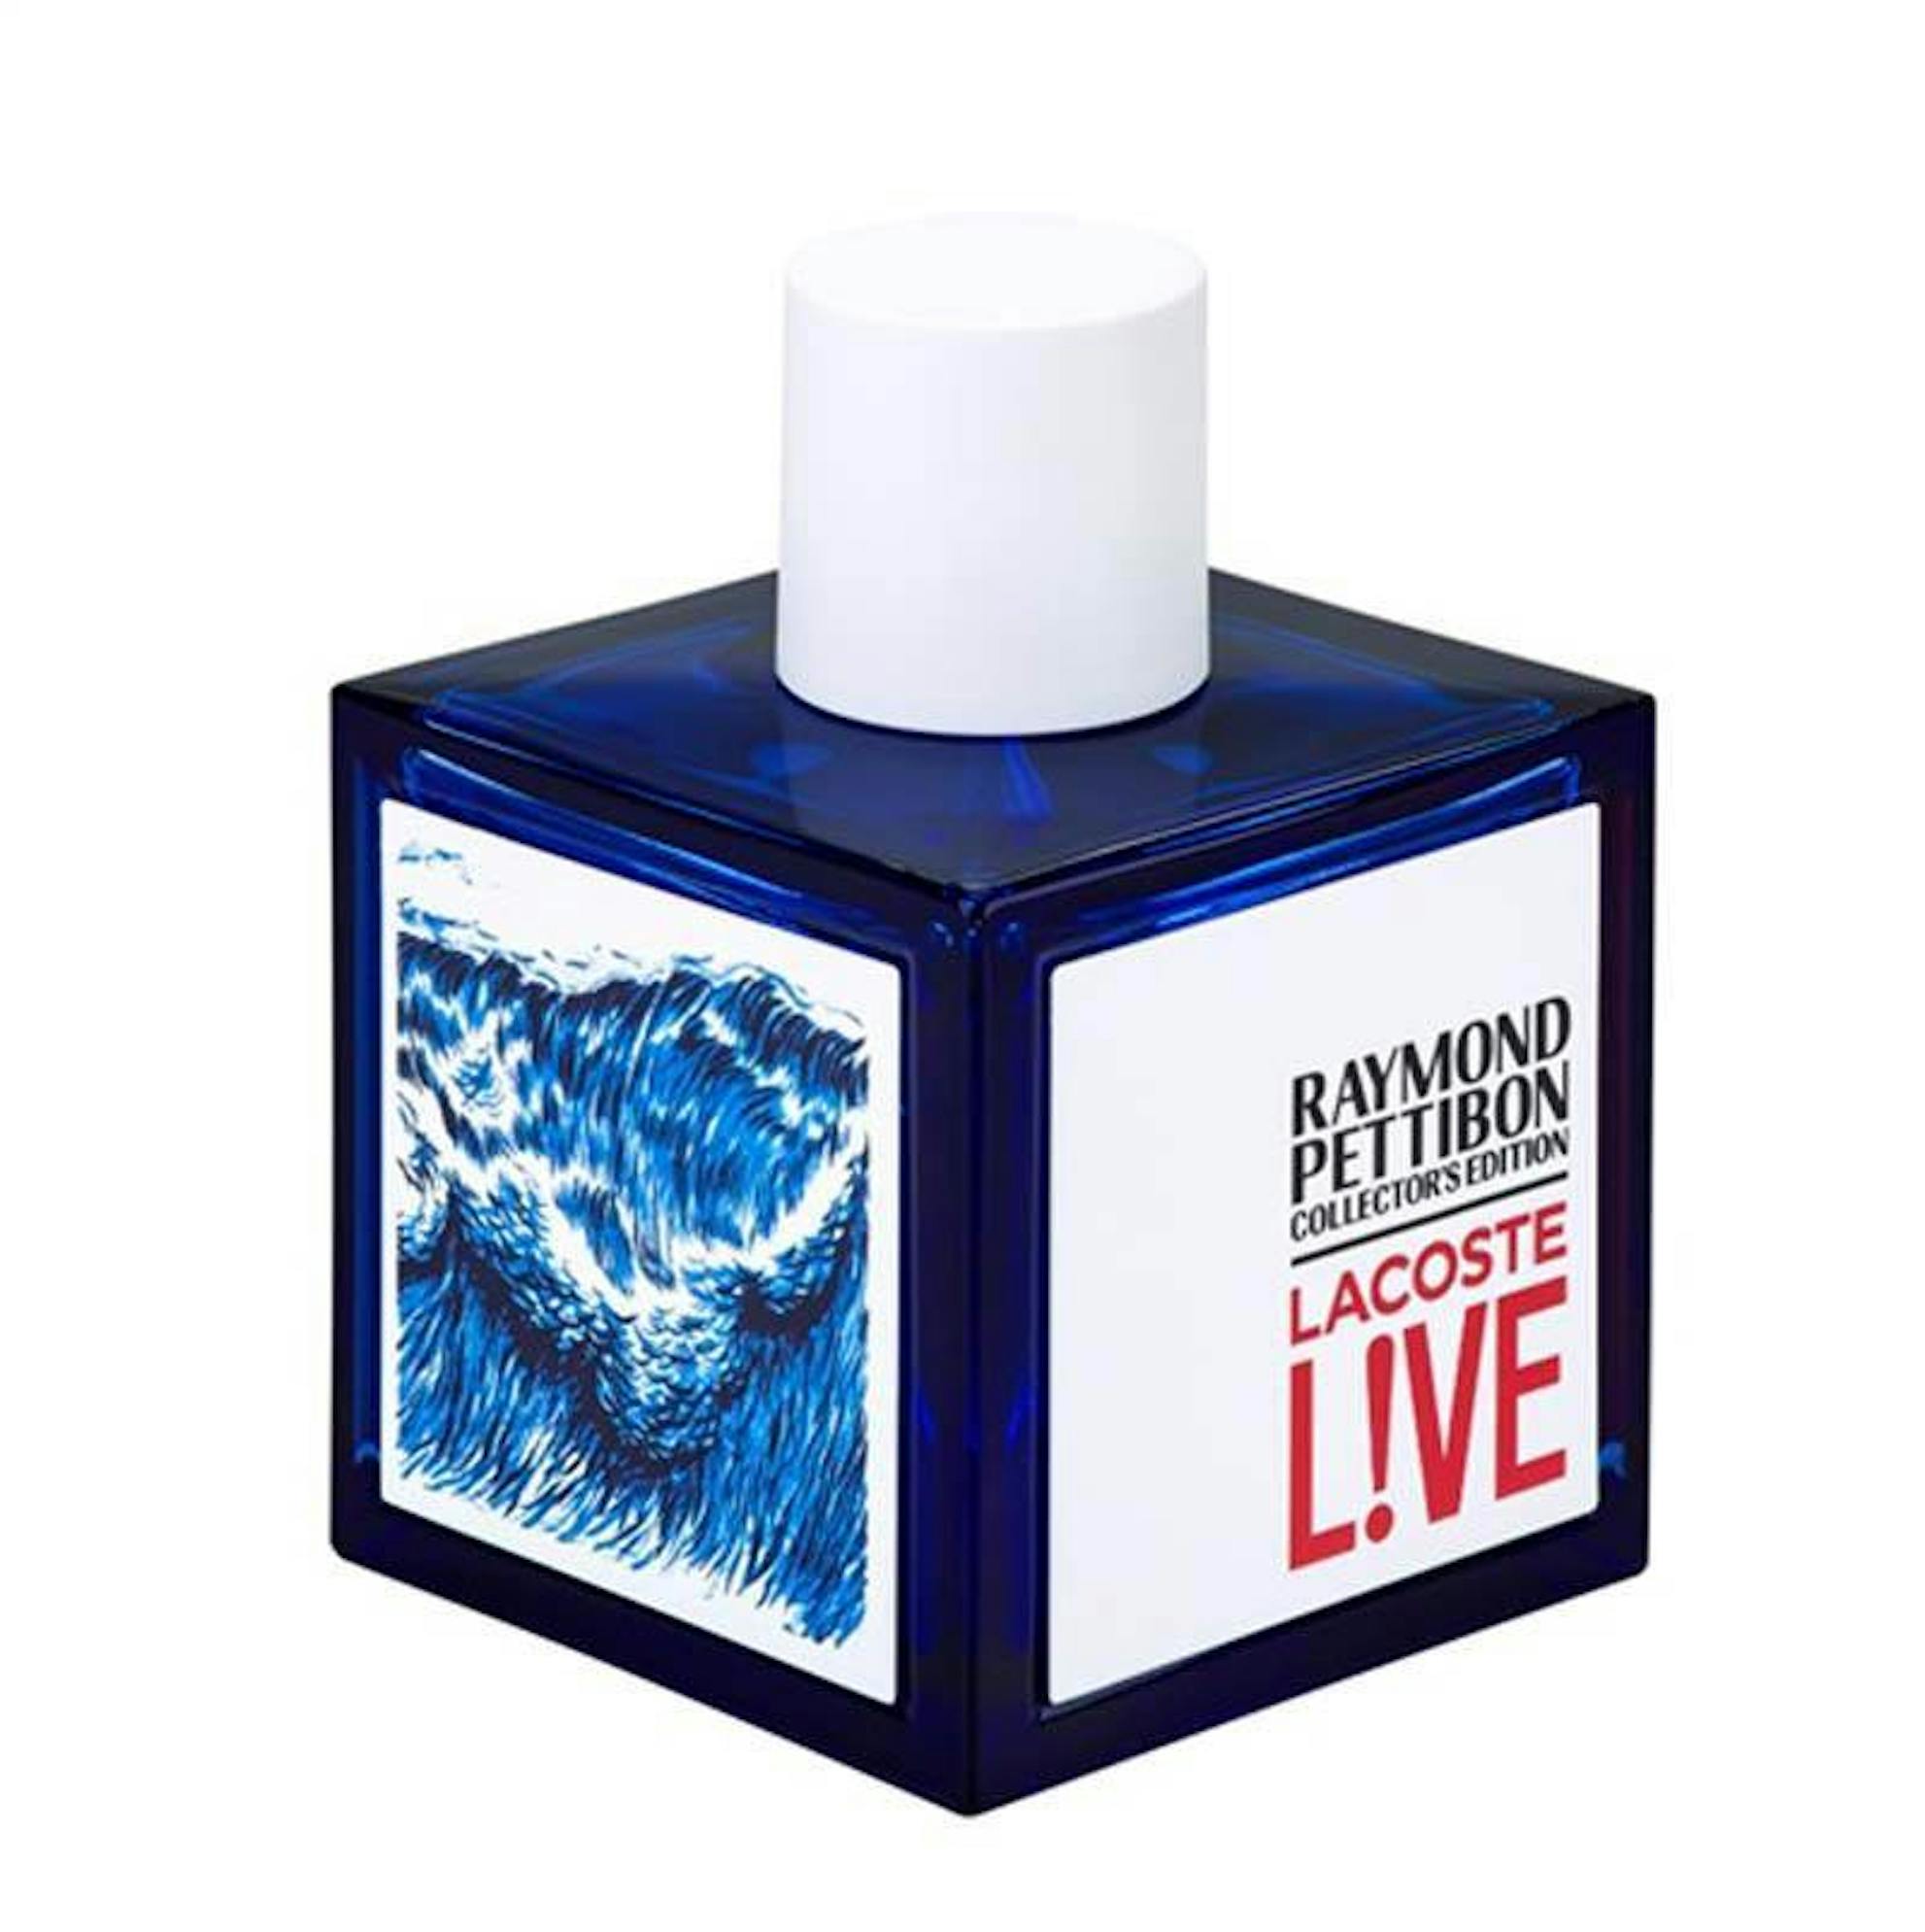 Lacoste Live Limited Edition Eau Toilette 100ml Spray | Fragrance Shop